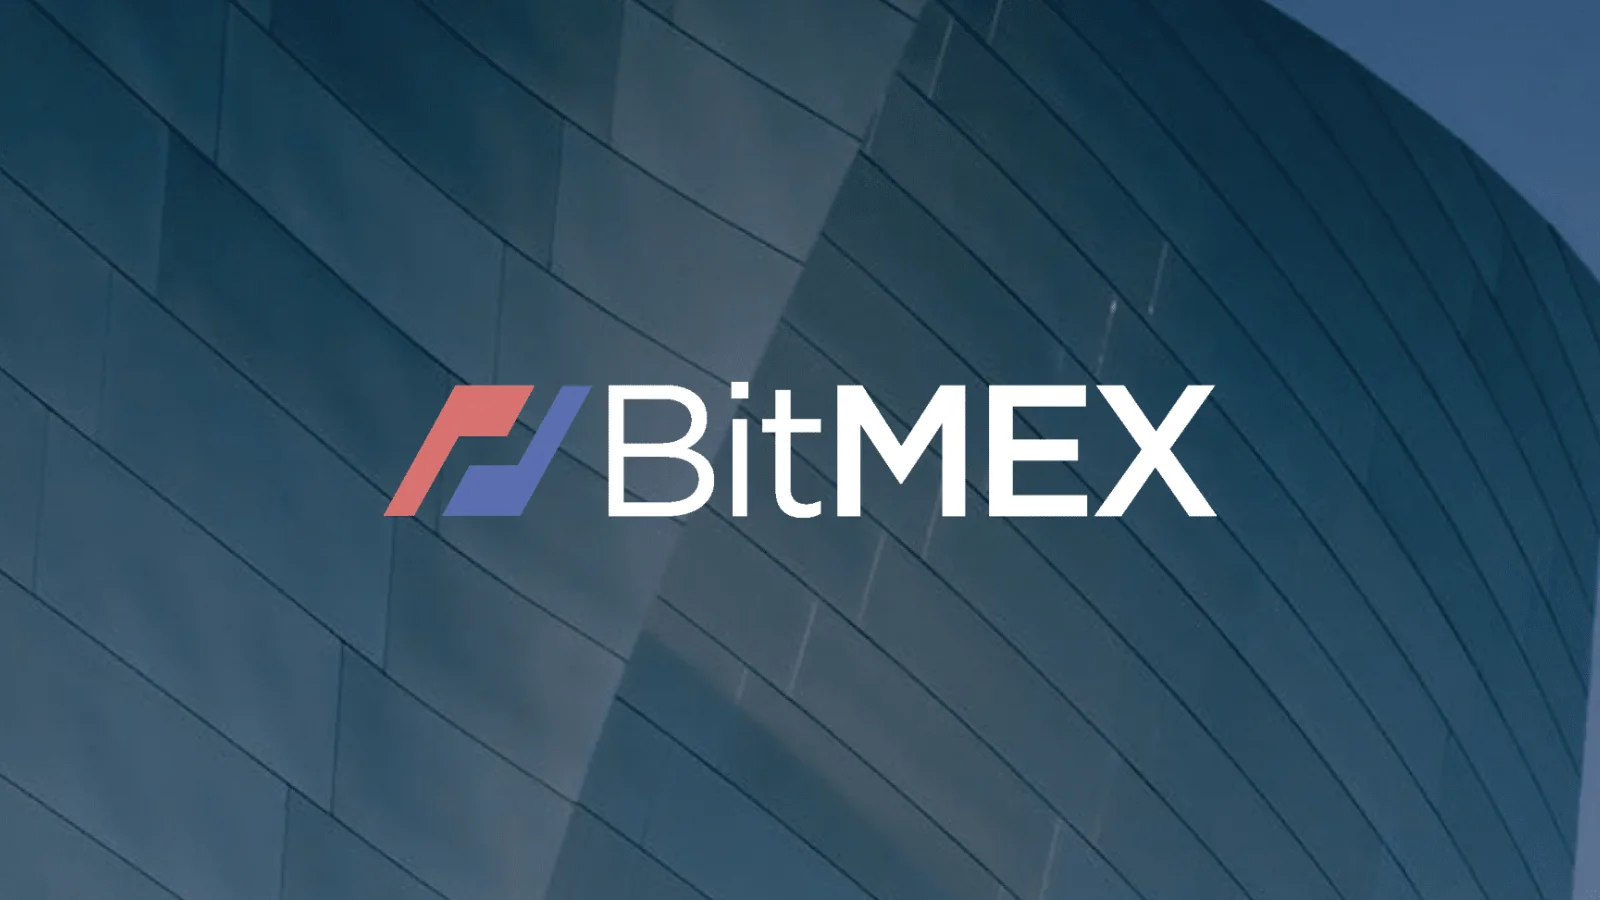 BitMEX’s Co-Founder Benjamin Dalo Sentenced to Probation